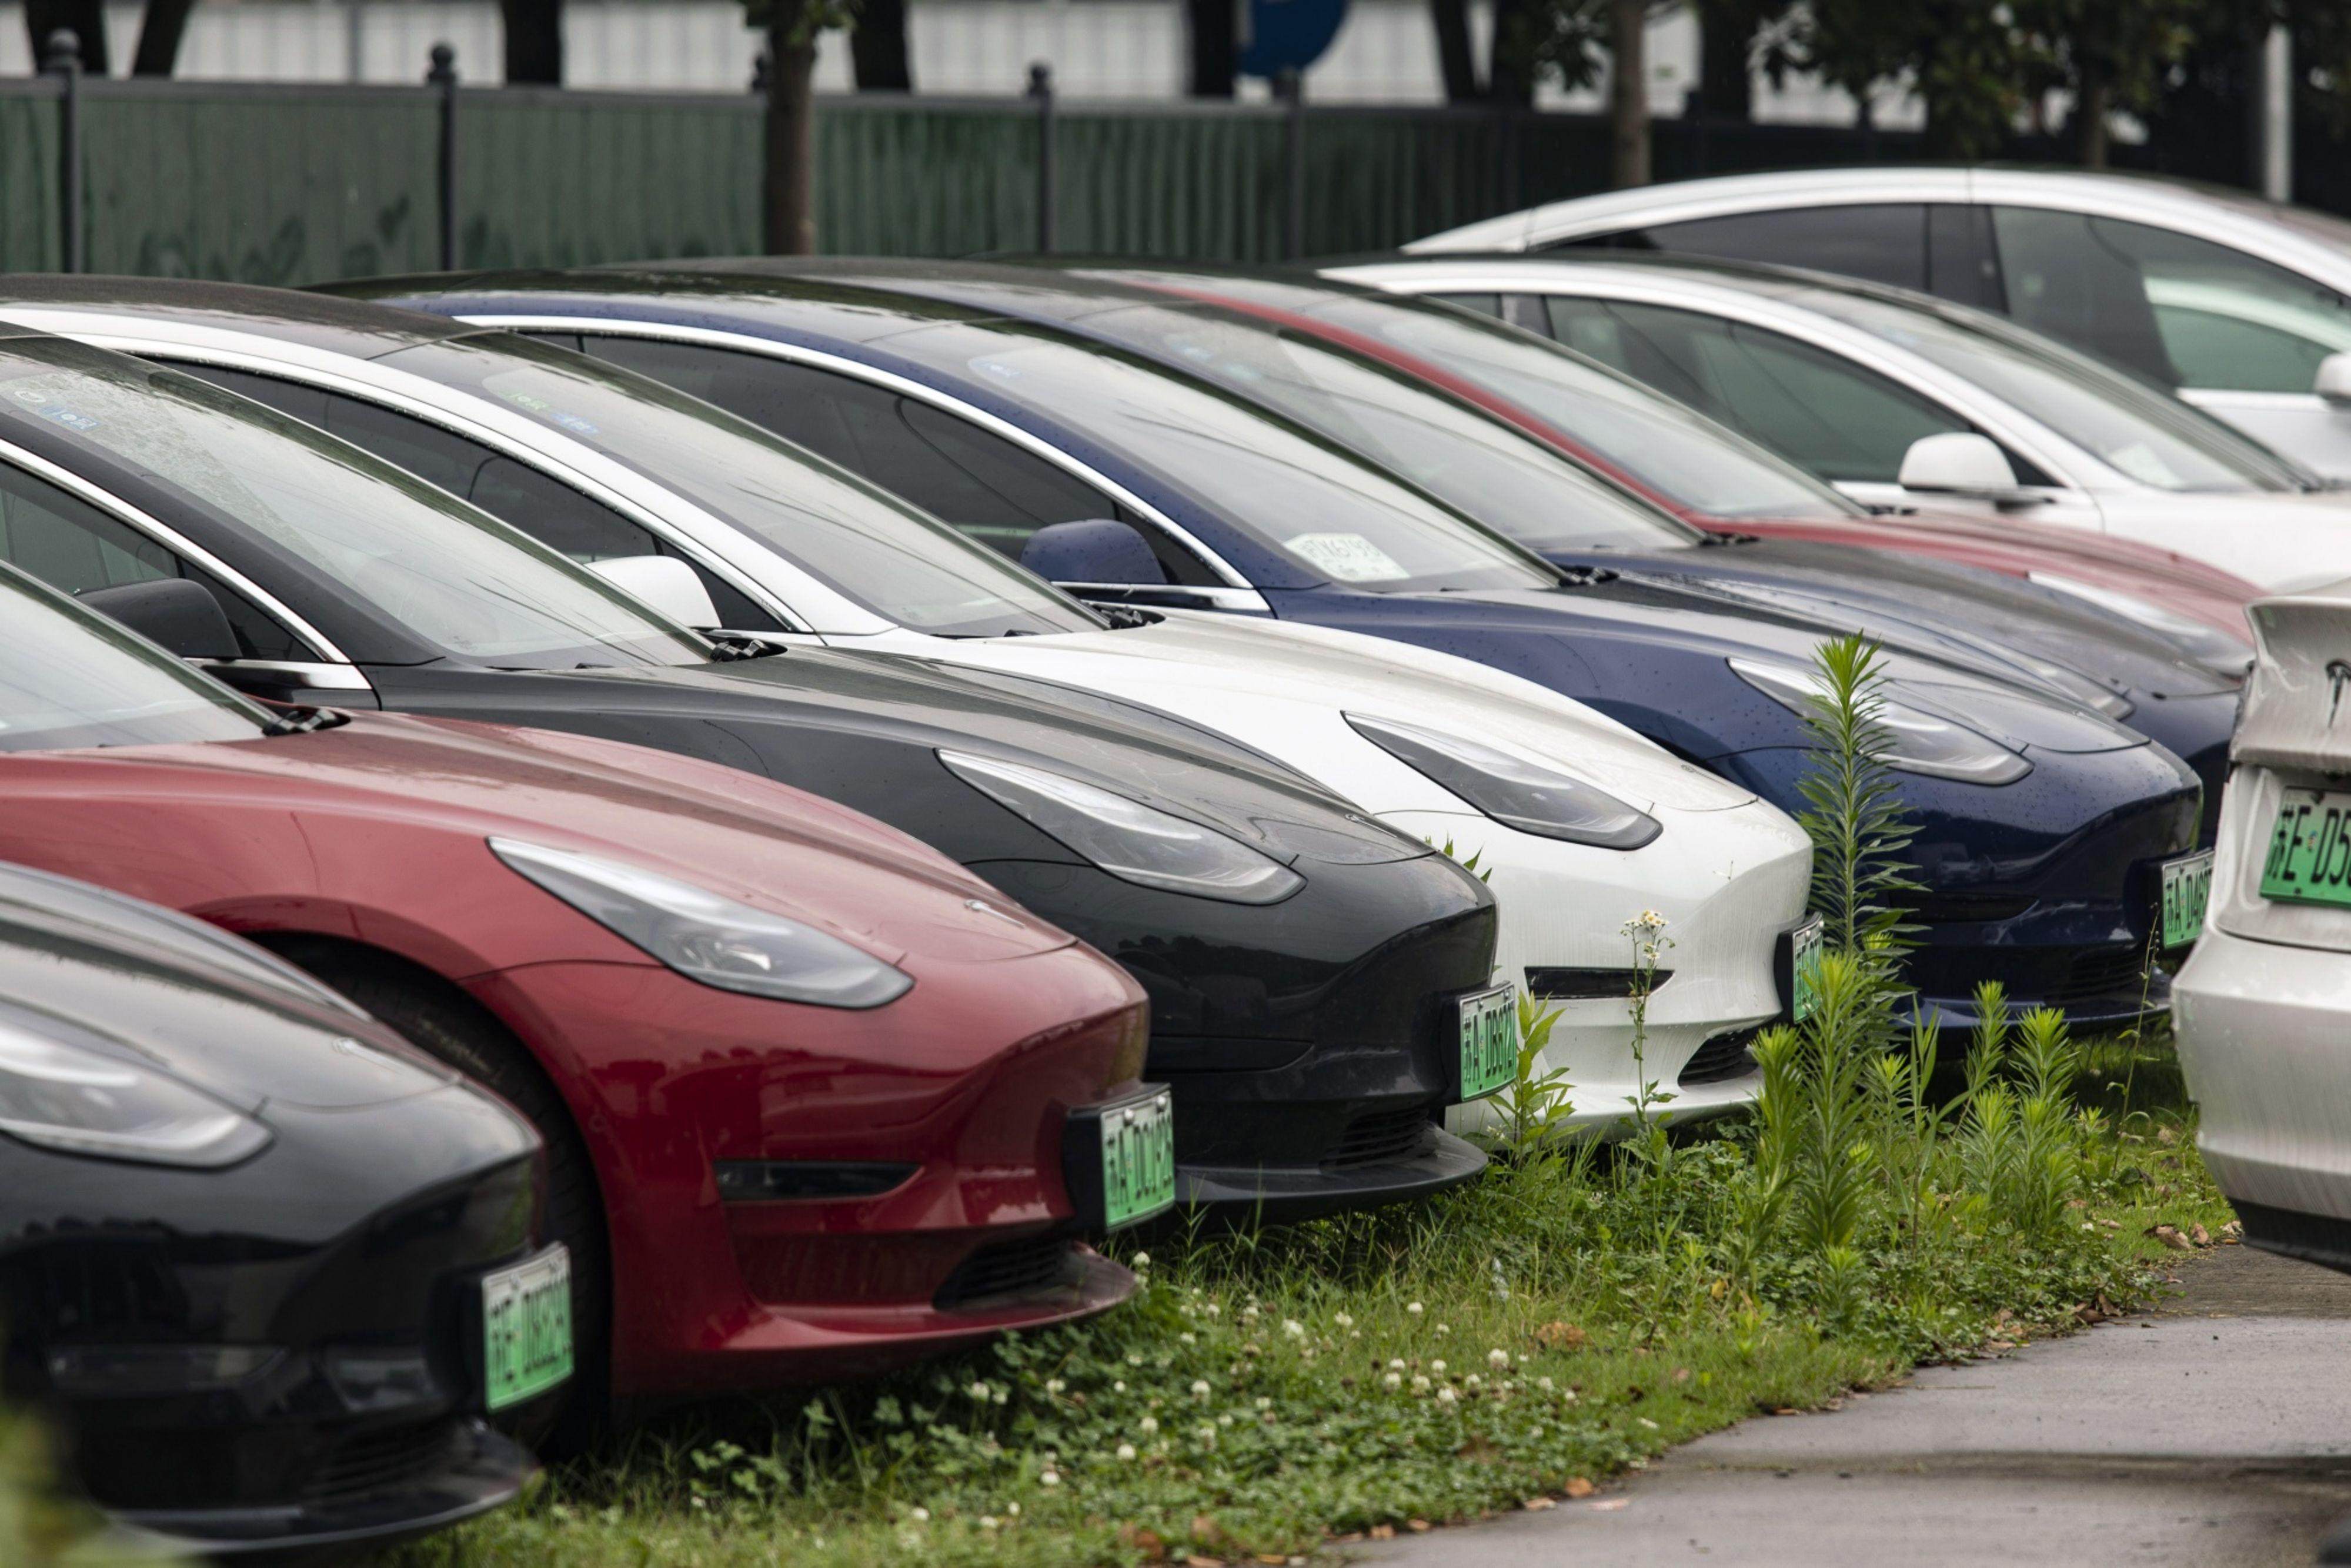 Tesla wycofała 120 tys. pojazdów. Ryzyko przypadkowego odblokowania drzwi  kabiny - Puls Biznesu 